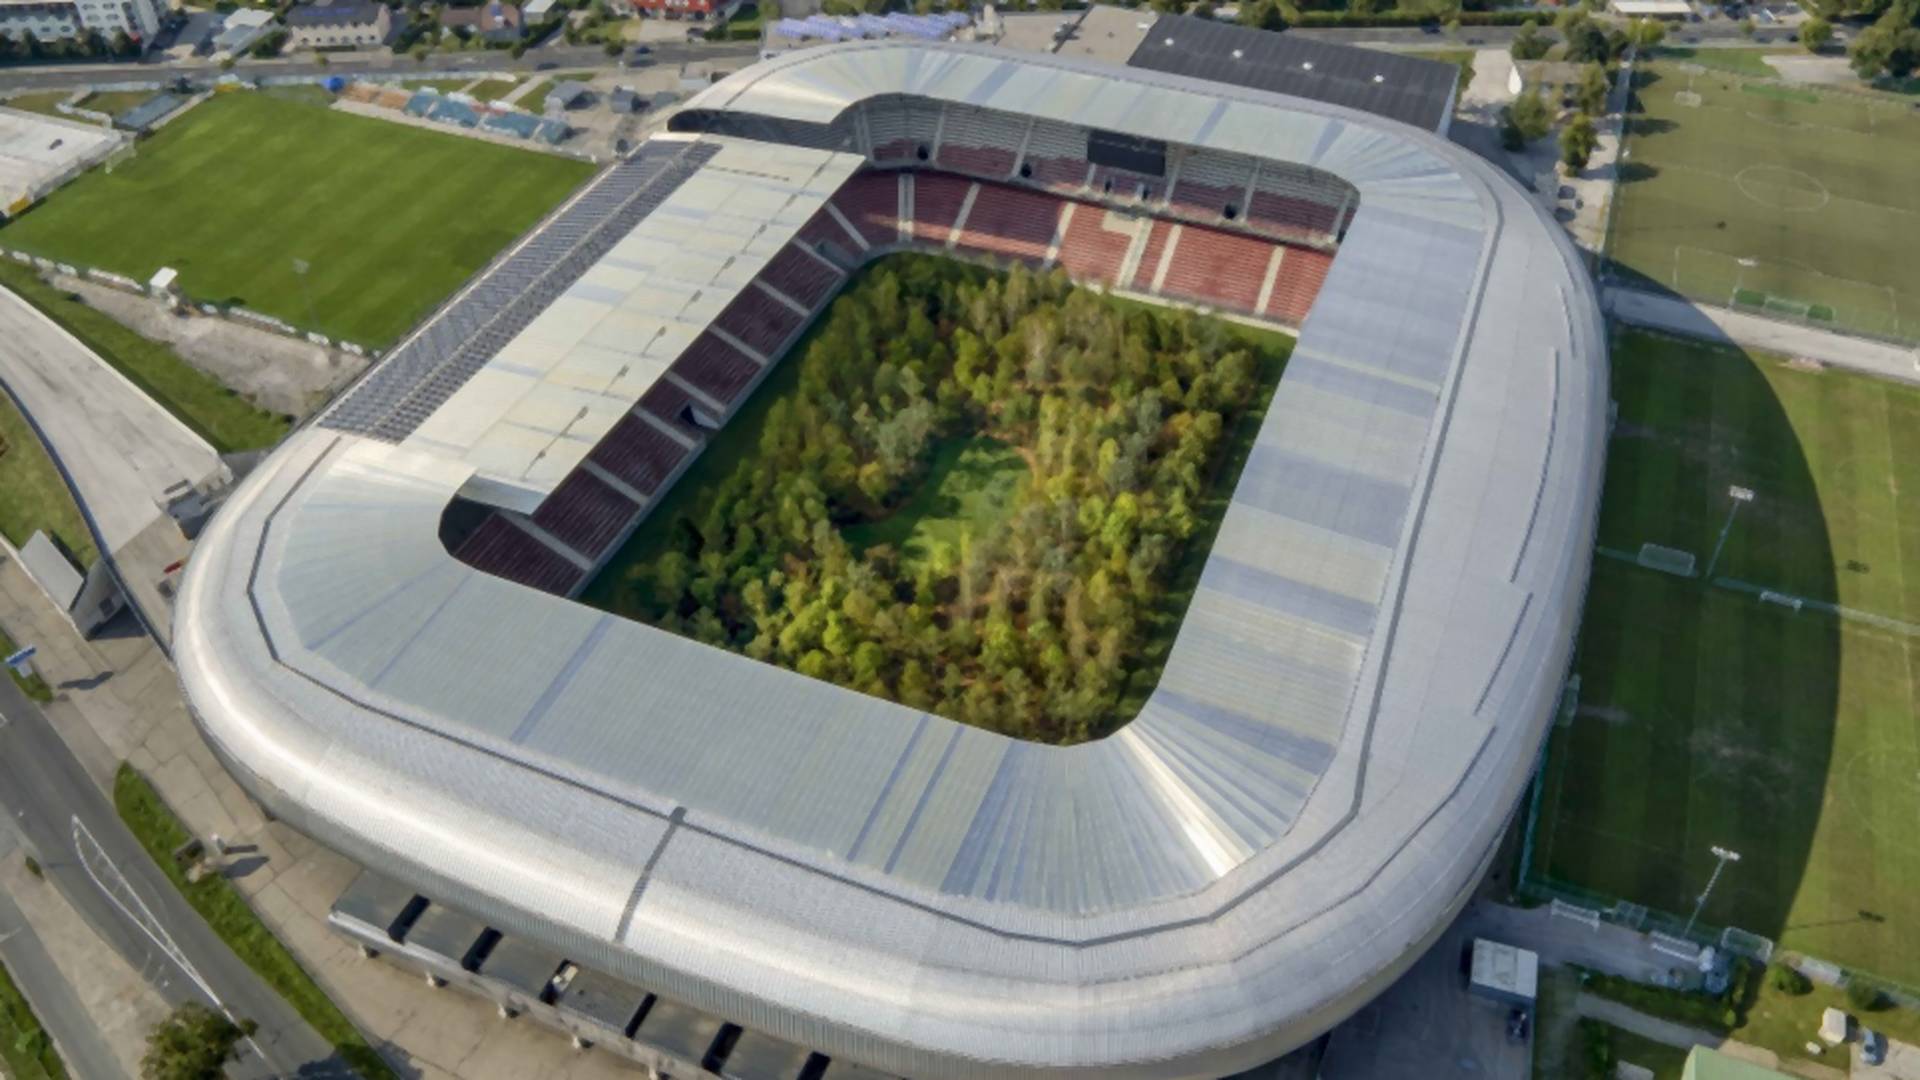 Stadion z Euro 2008 zamieniony w leśne ZOO. Będzie otwarty za darmo